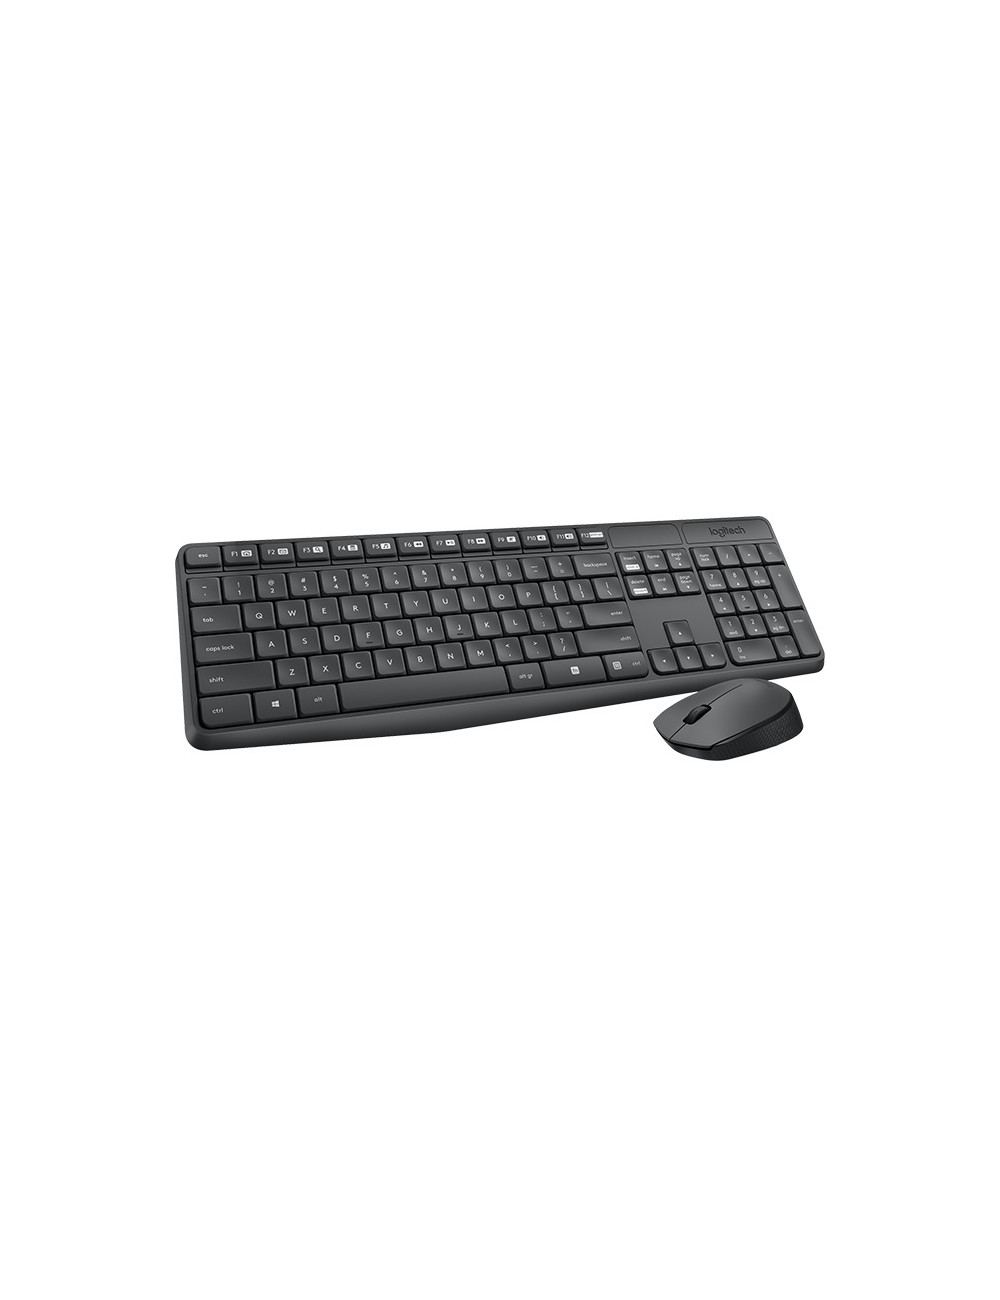 LOGITECH MK235 Wireless Keyboard&Mouse